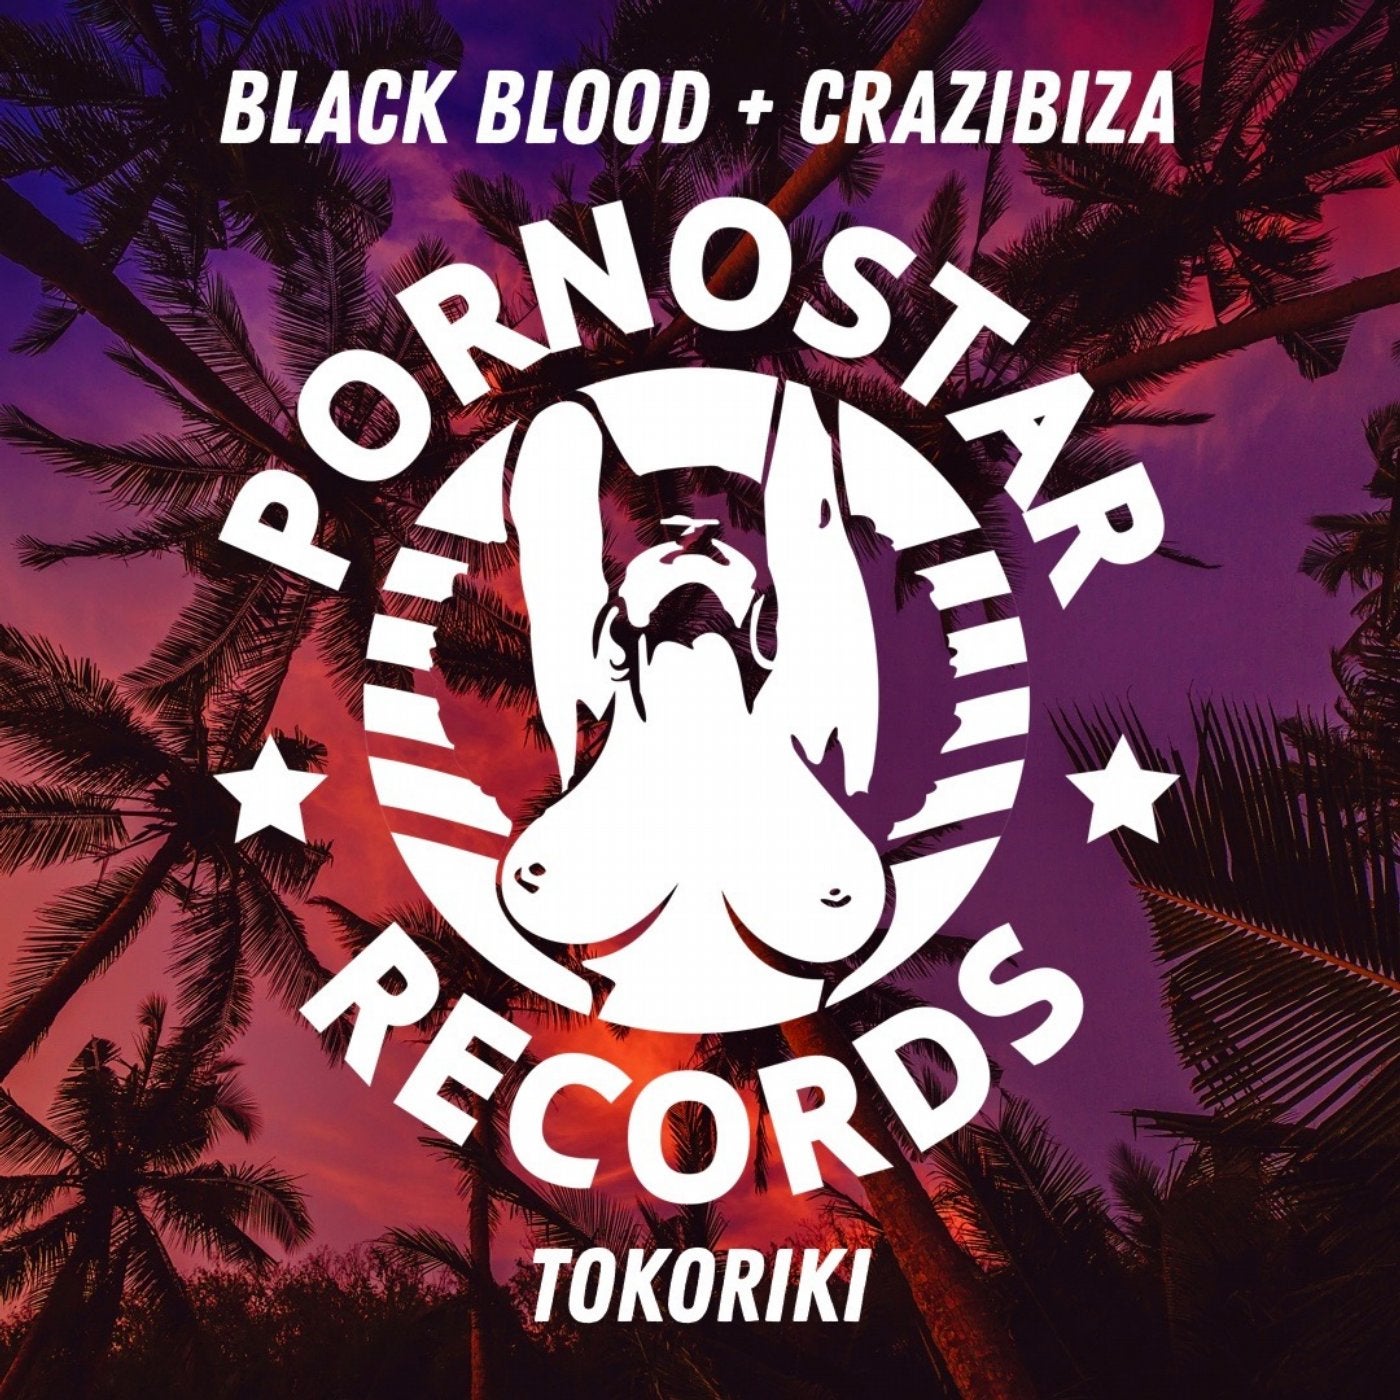 Black Blood, Crazibiza - Tokoriki